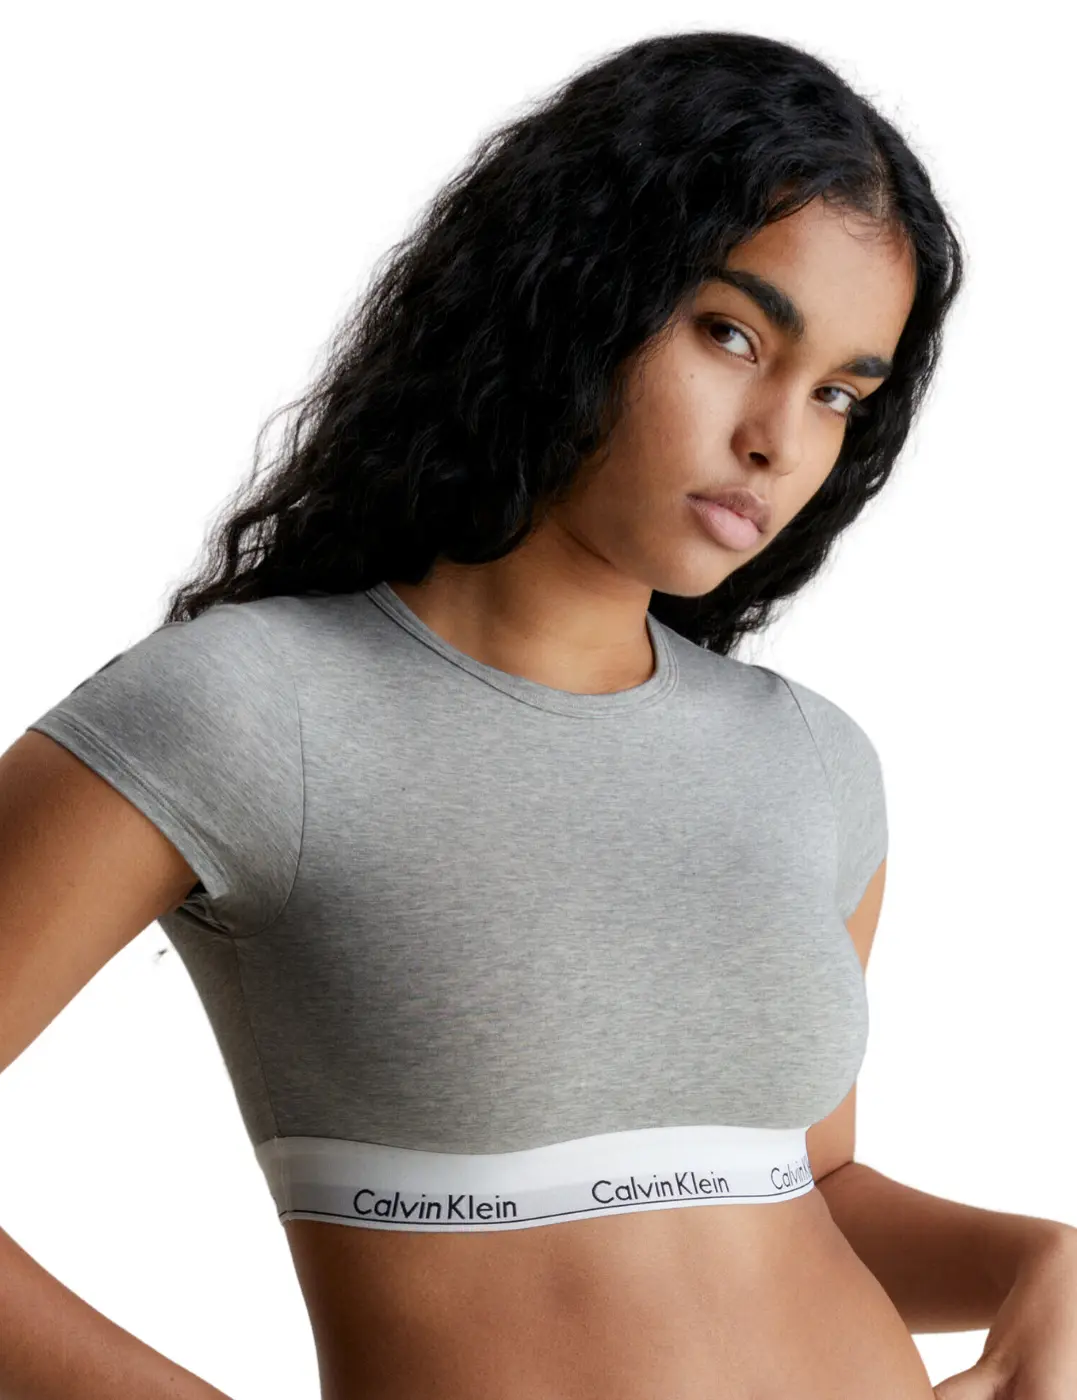 Calvin Klein Modern Cotton T-Shirt Bralette - Belle Lingerie